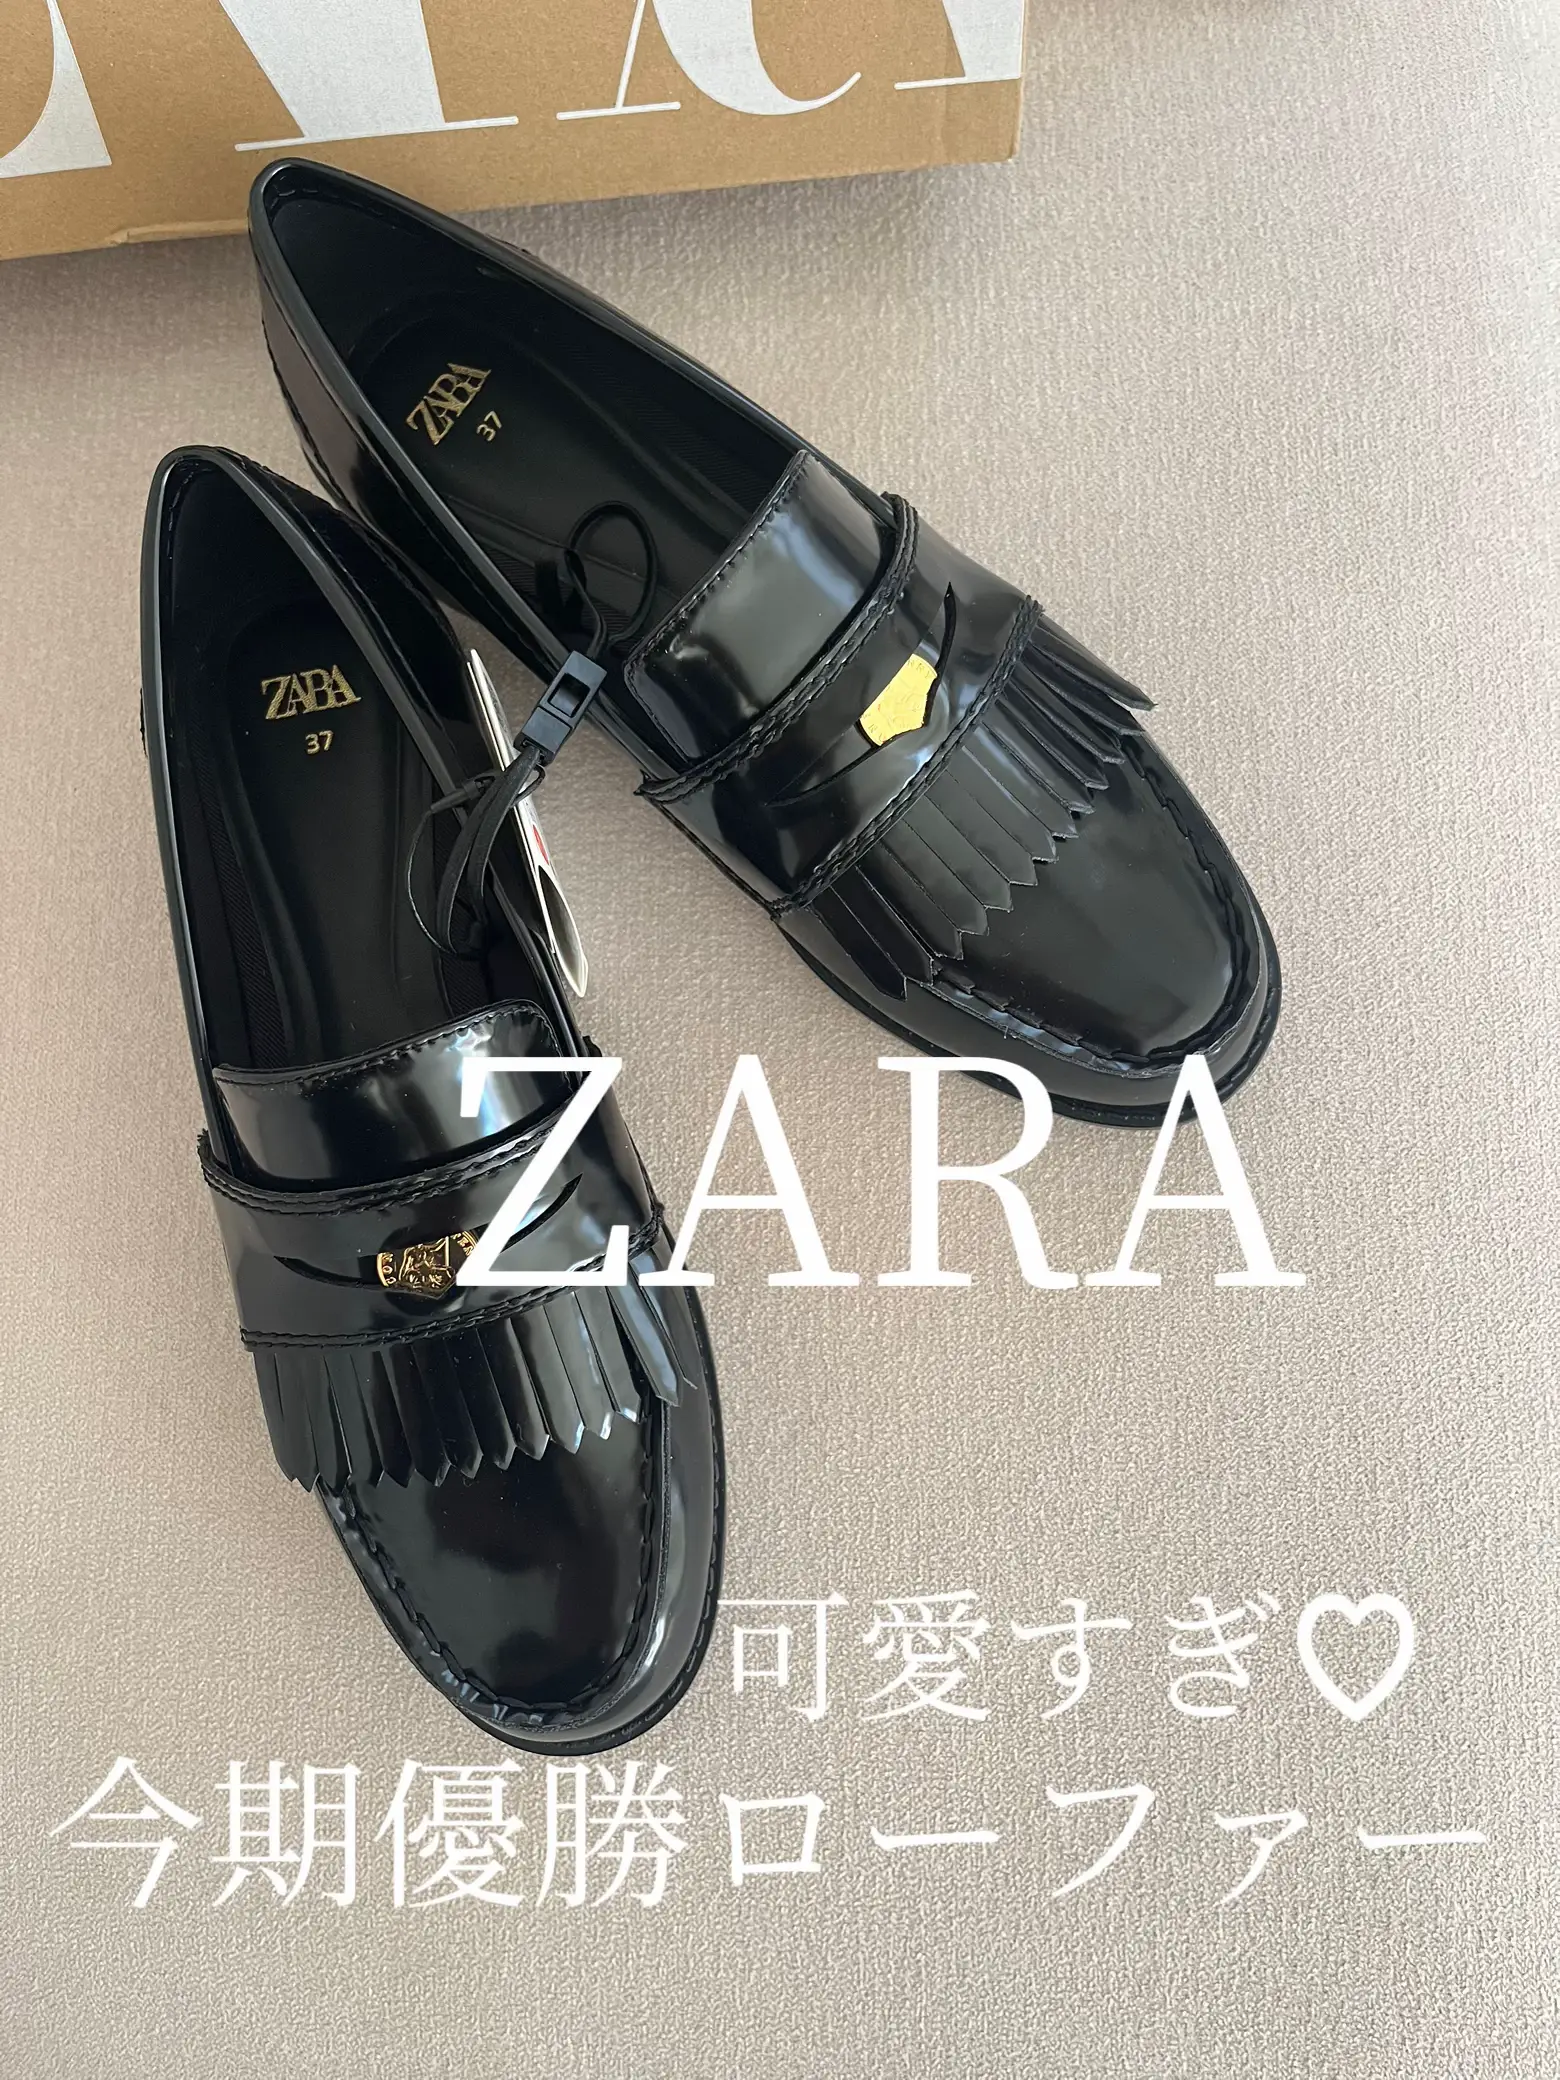 ZARA フラットローファーメタルディテール 37即購入可 - ローファー/革靴